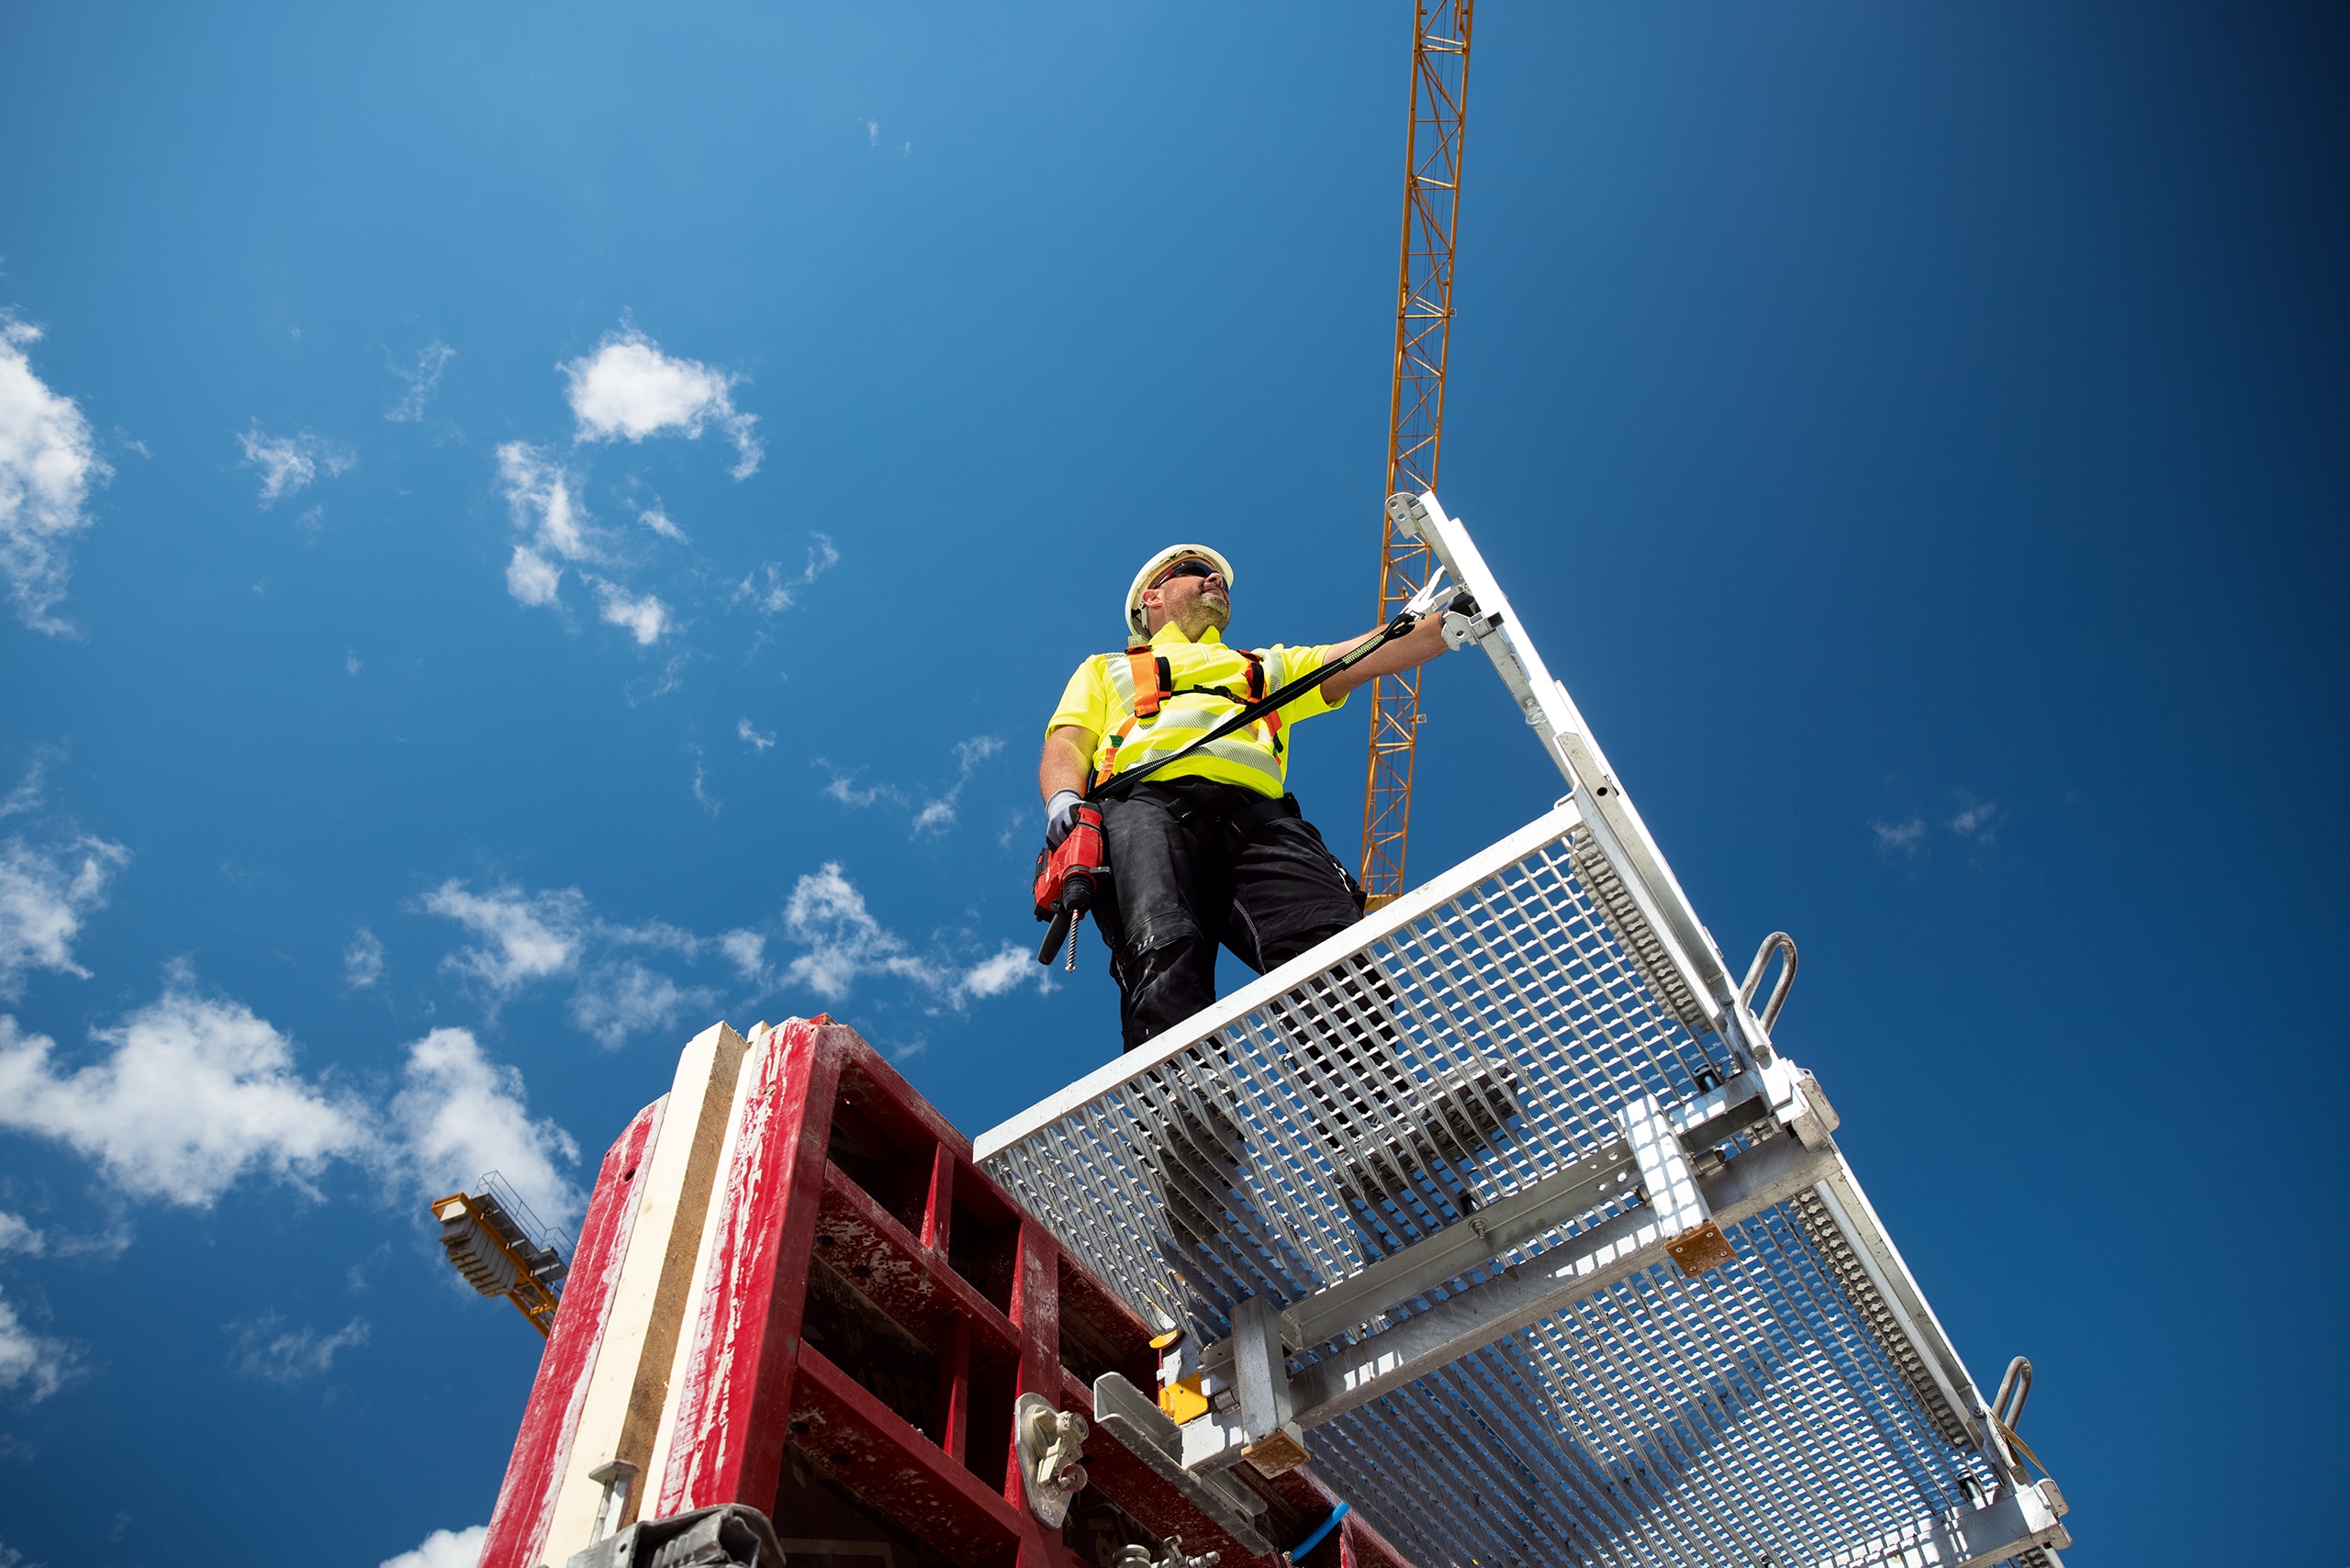 Pracovník stojí na plošině se strojem připevněným bezpečnostním popruhem